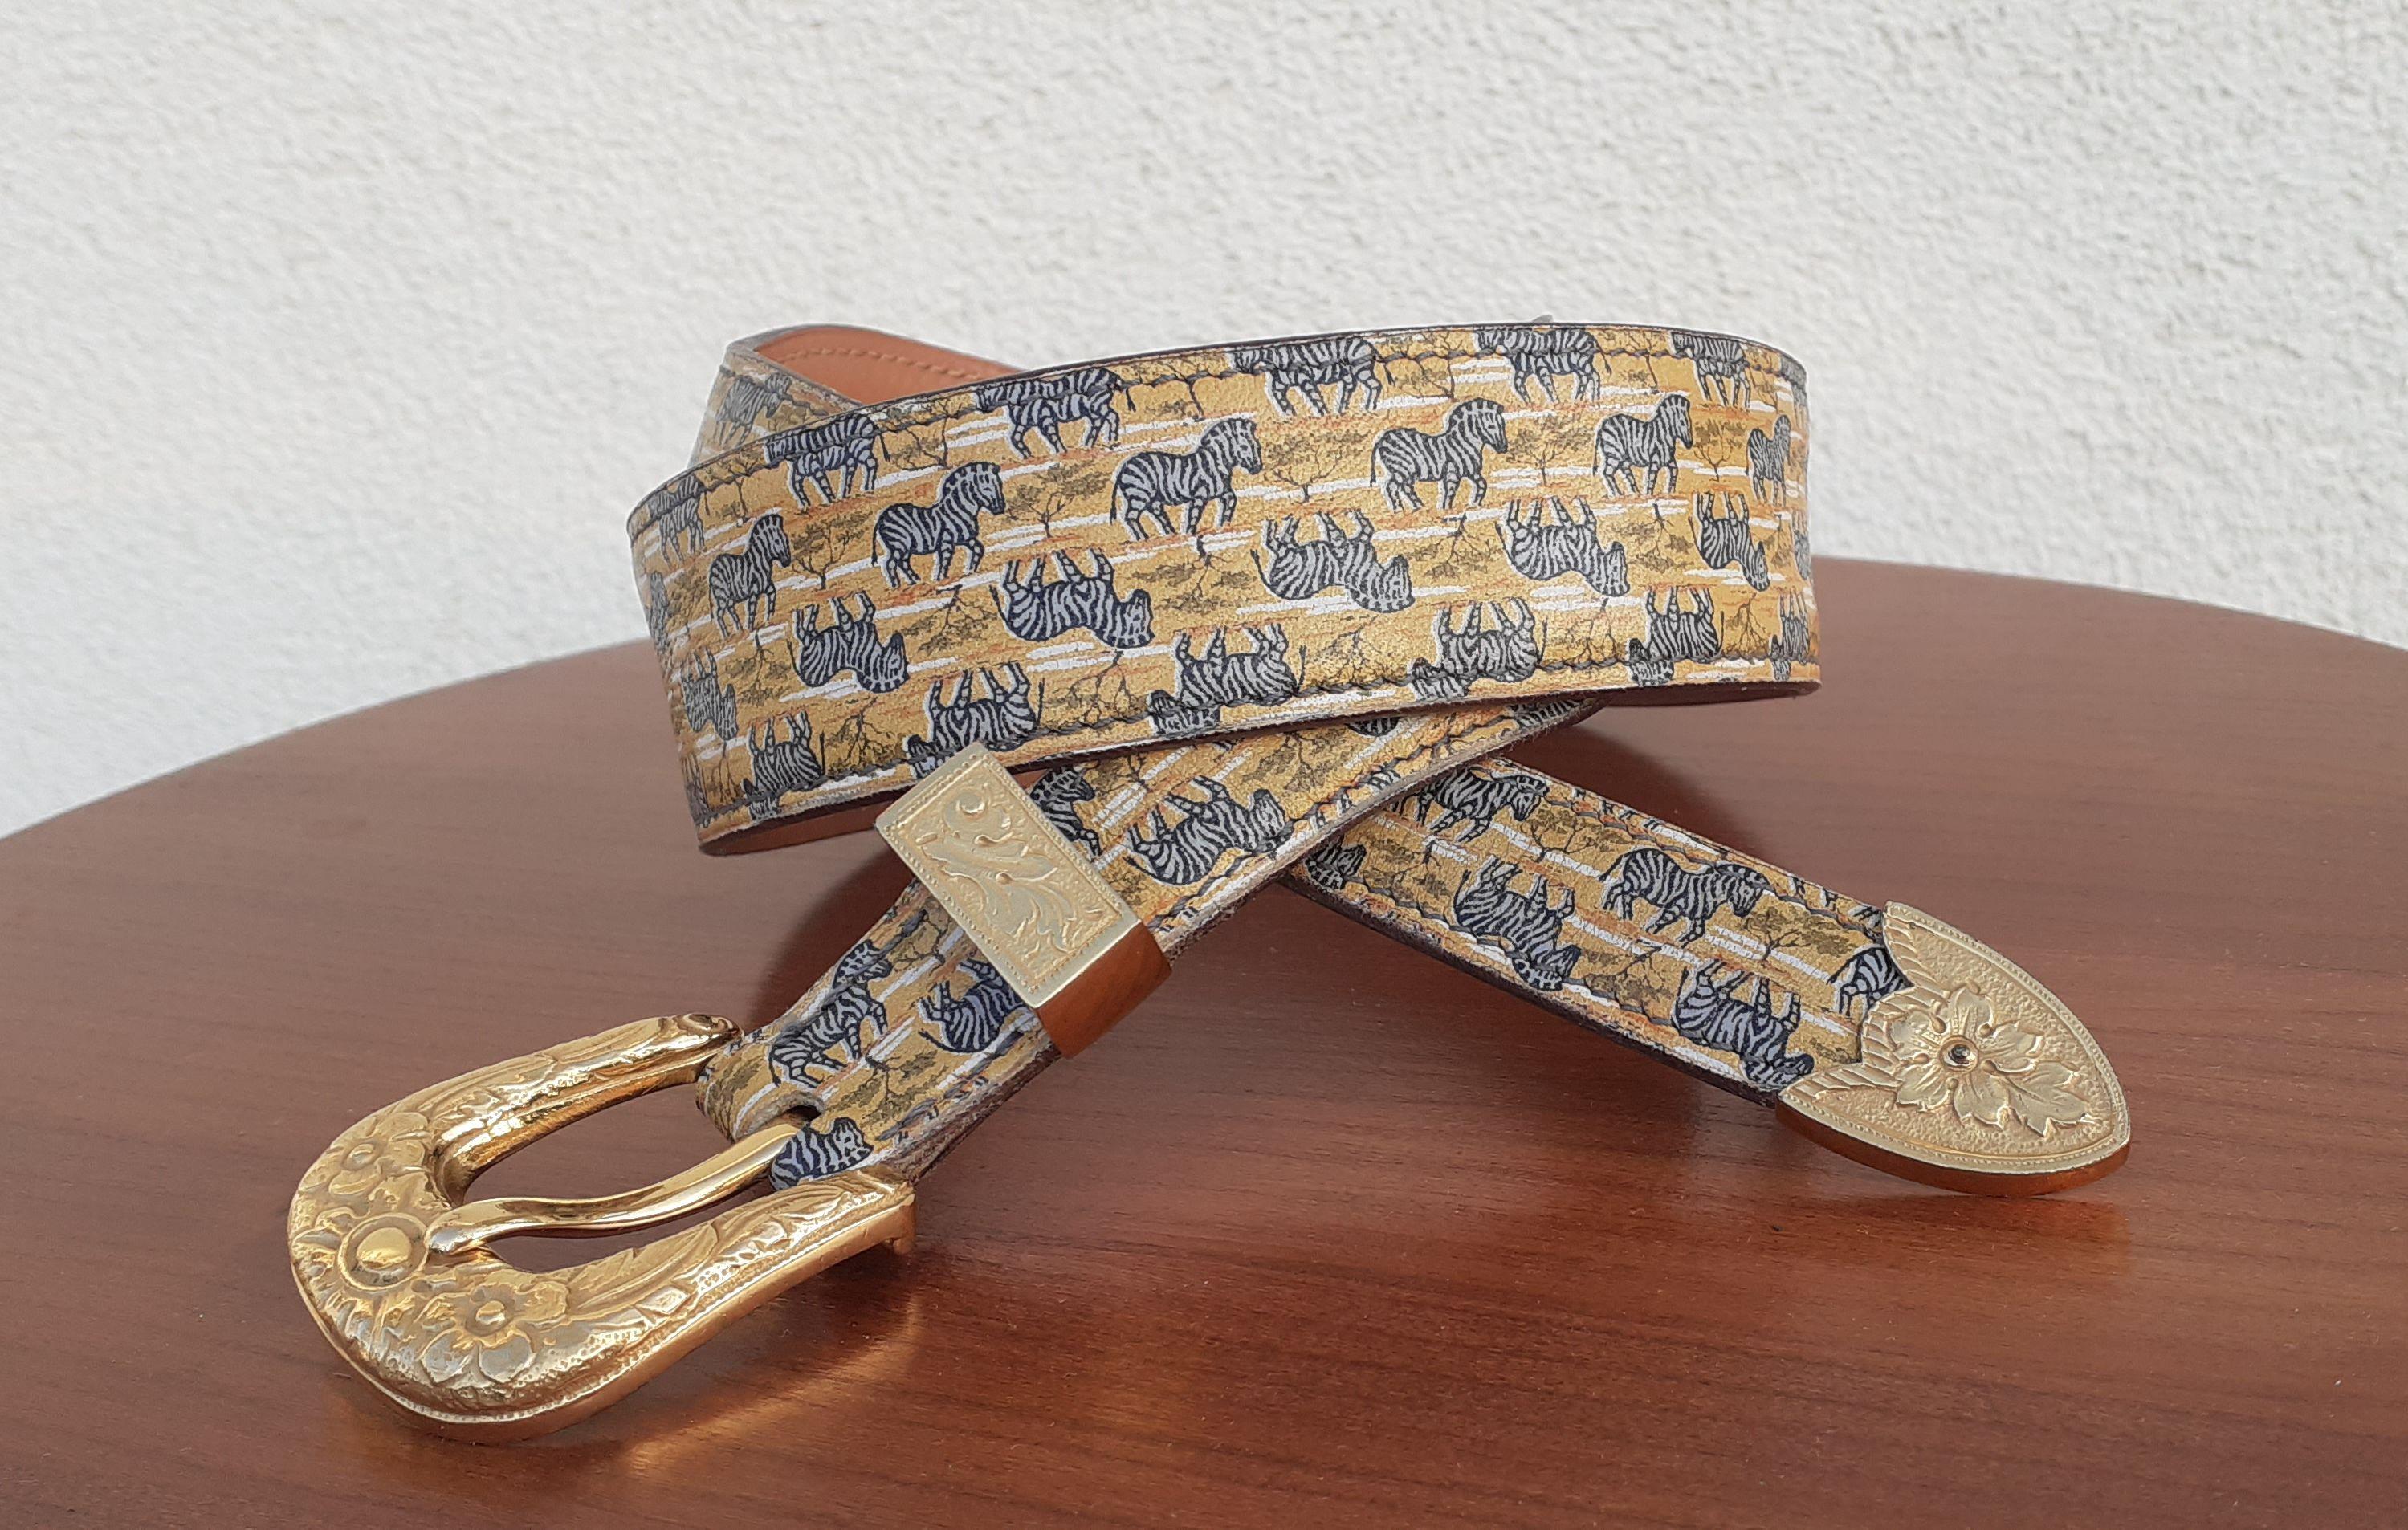 Rare et belle ceinture Hermès authentique

Imprimer : les zèbres dans la savane

D'après le foulard à motifs 